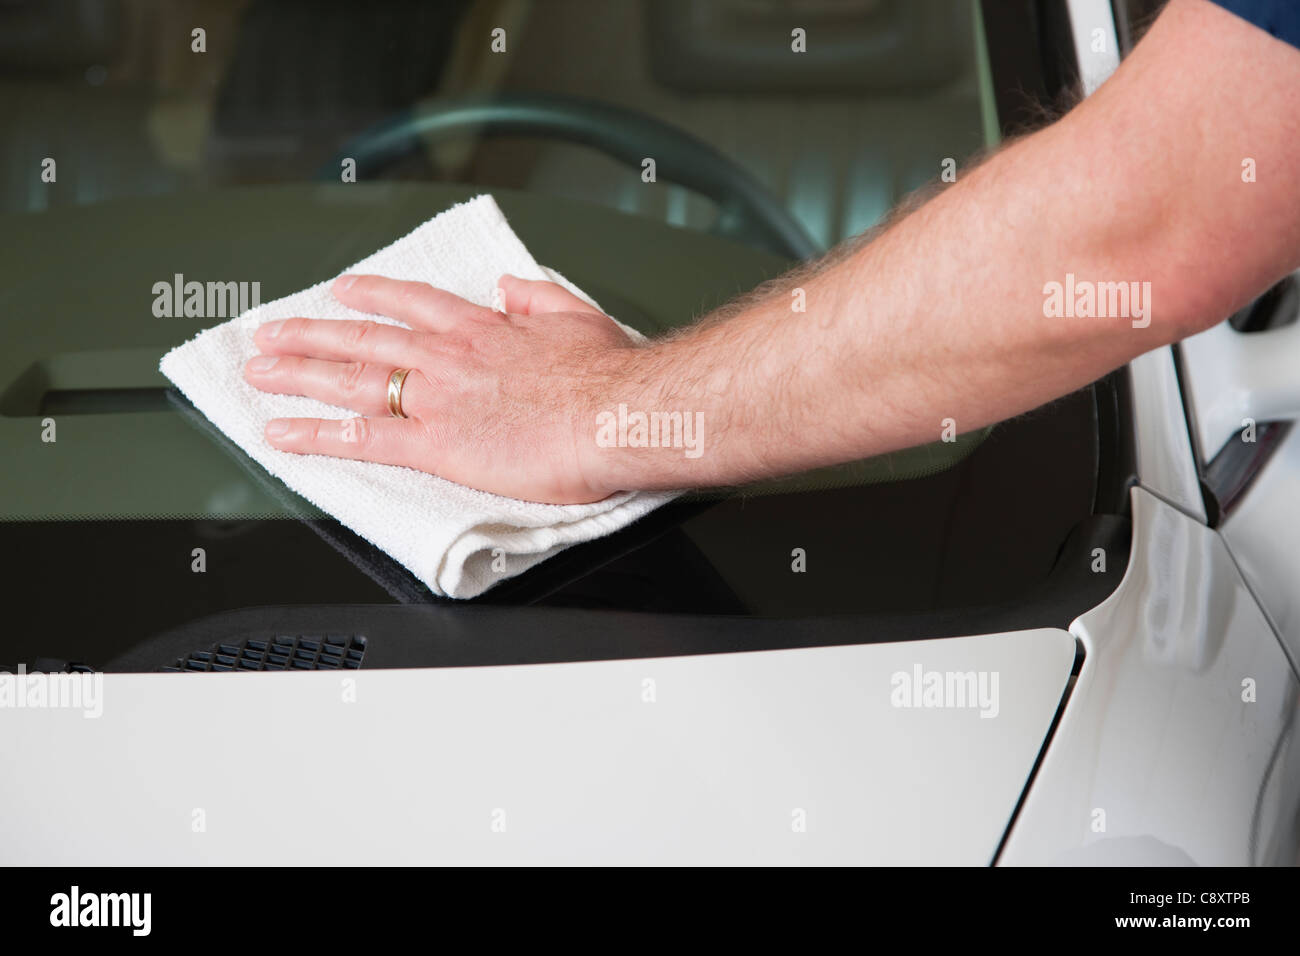 États-unis, Illinois, Metamora, la main de l'homme sur le pare-brise du véhicule de nettoyage, close-up Banque D'Images